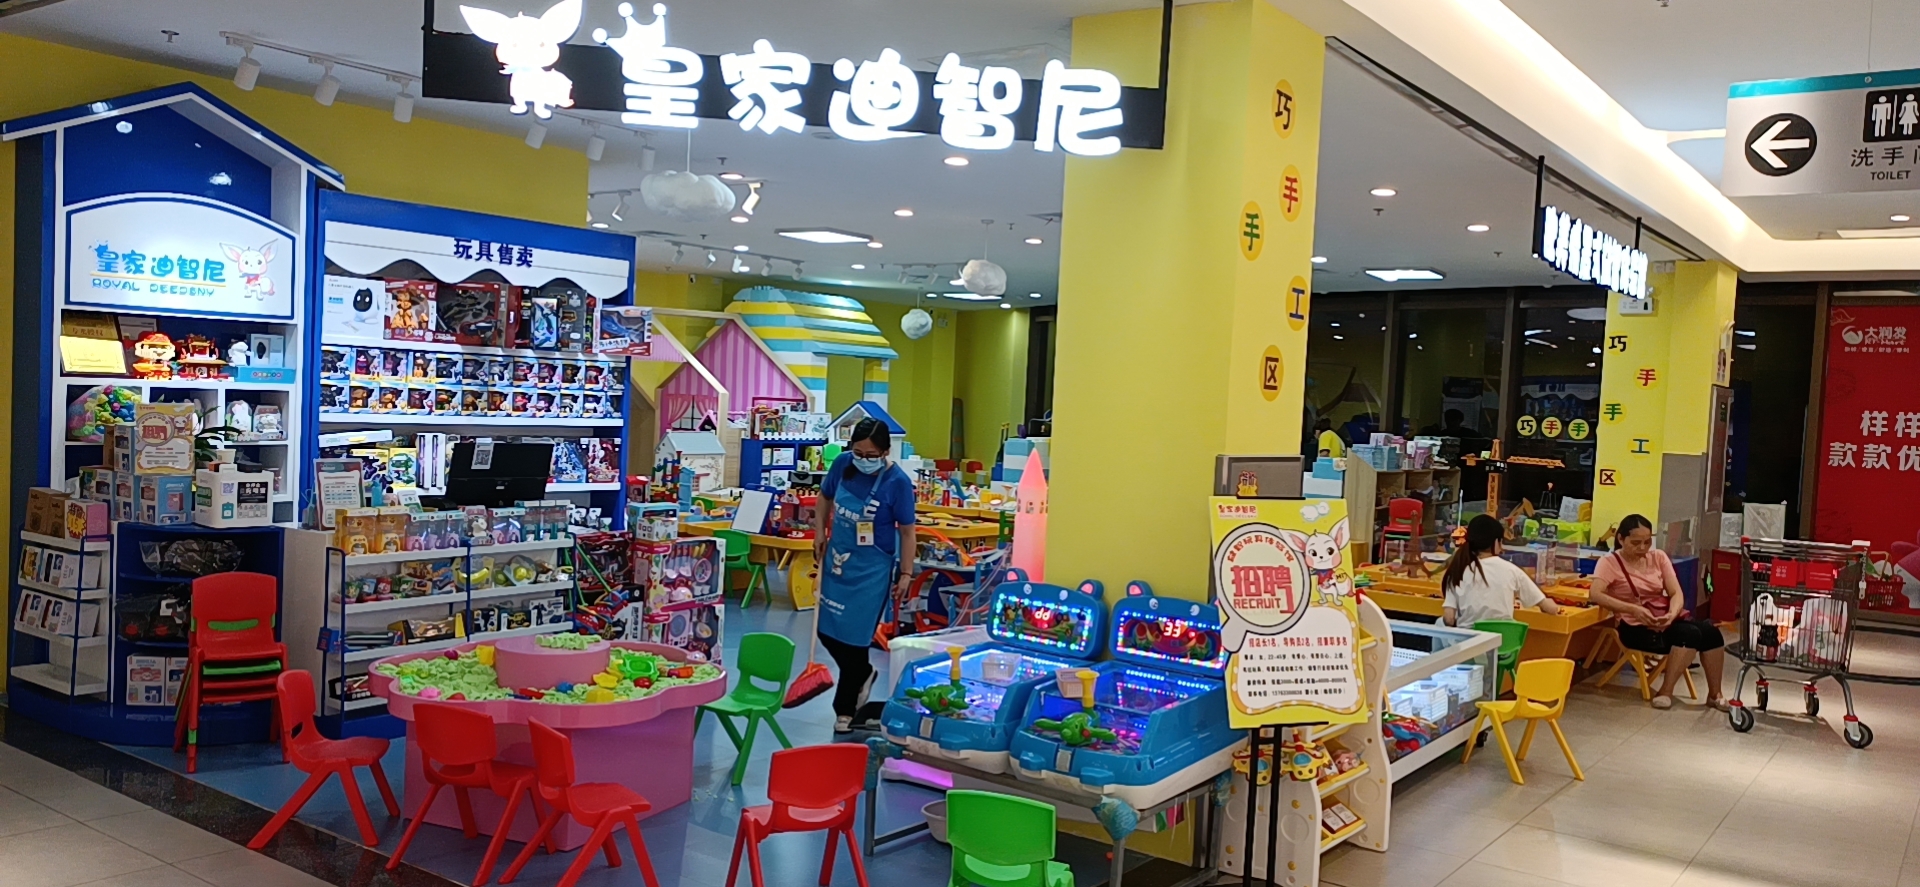 中国玩具行业发展趋势及市场分析